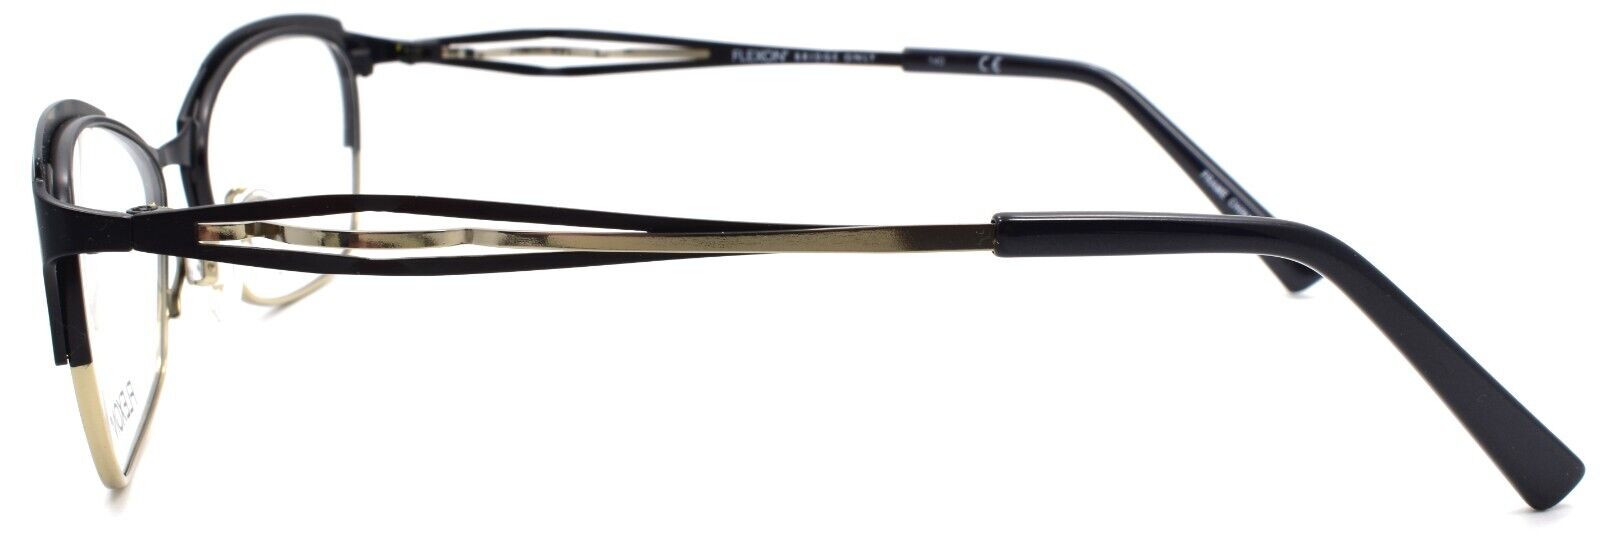 3-Flexon W3000 001 Women's Eyeglasses Frames Black 53-17-135 Titanium Bridge-883900202855-IKSpecs